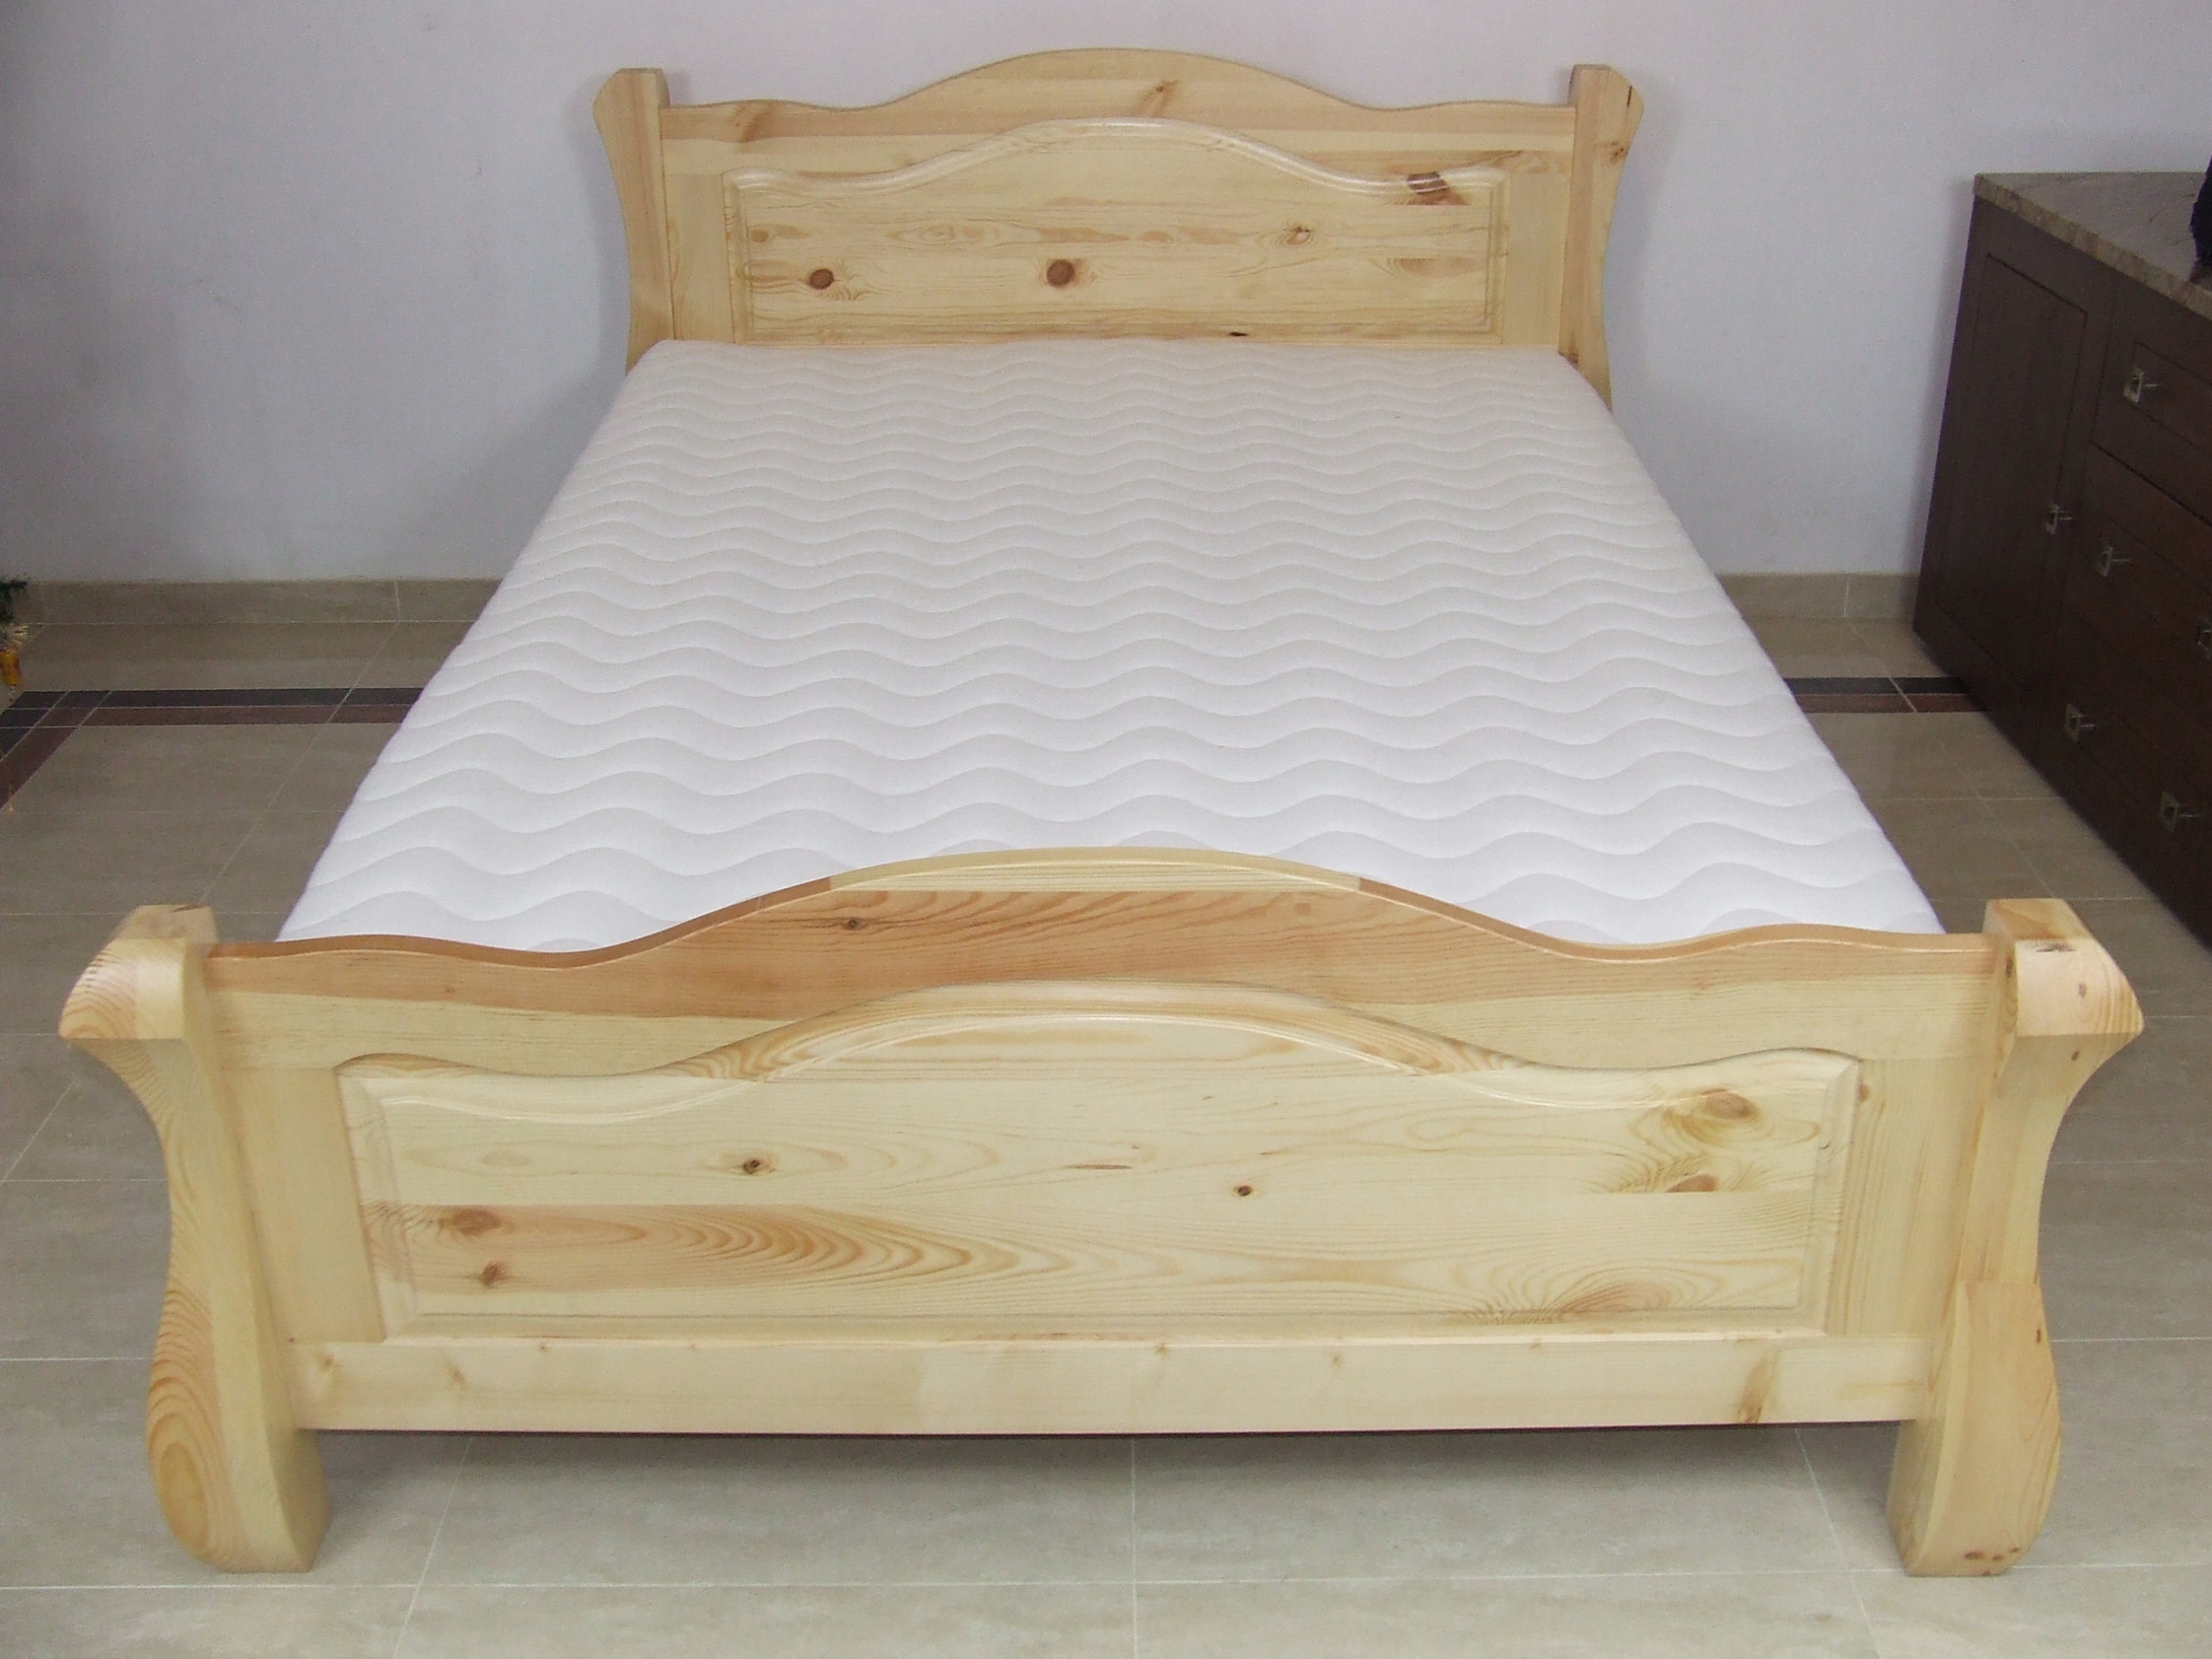 Купить деревянную кровать недорого. Кровать Фельсе сосна 160×200. Кровать массив сосны 160х200. Мебель через вайлдберриз кровать 160 на 200 из массива сосны.